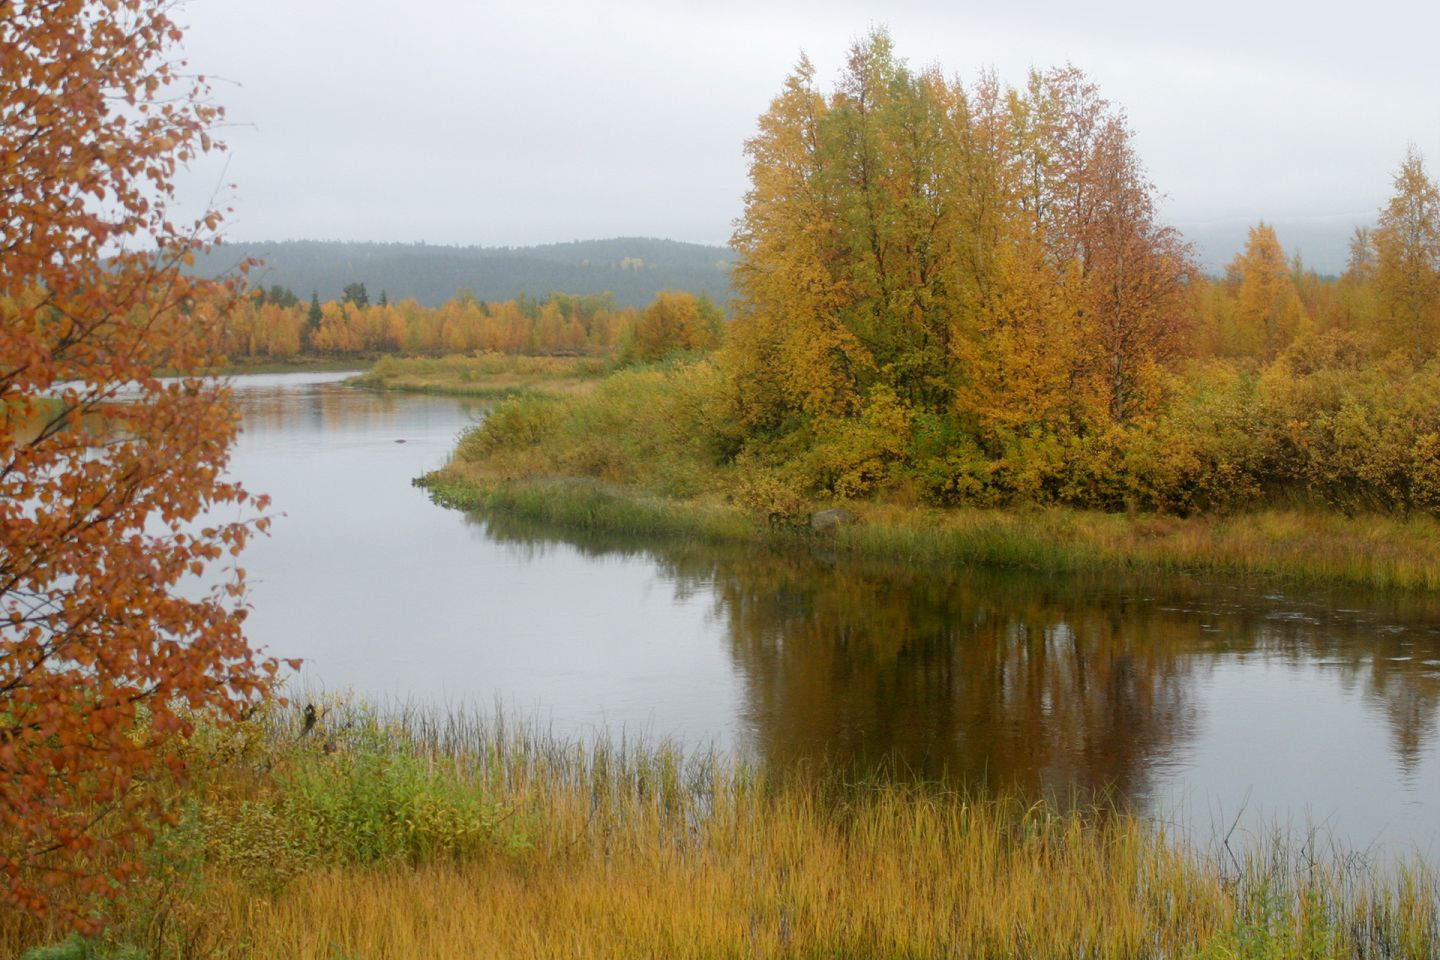 Äkäsjoki River in Kolari, Lapland, Finland in autumn